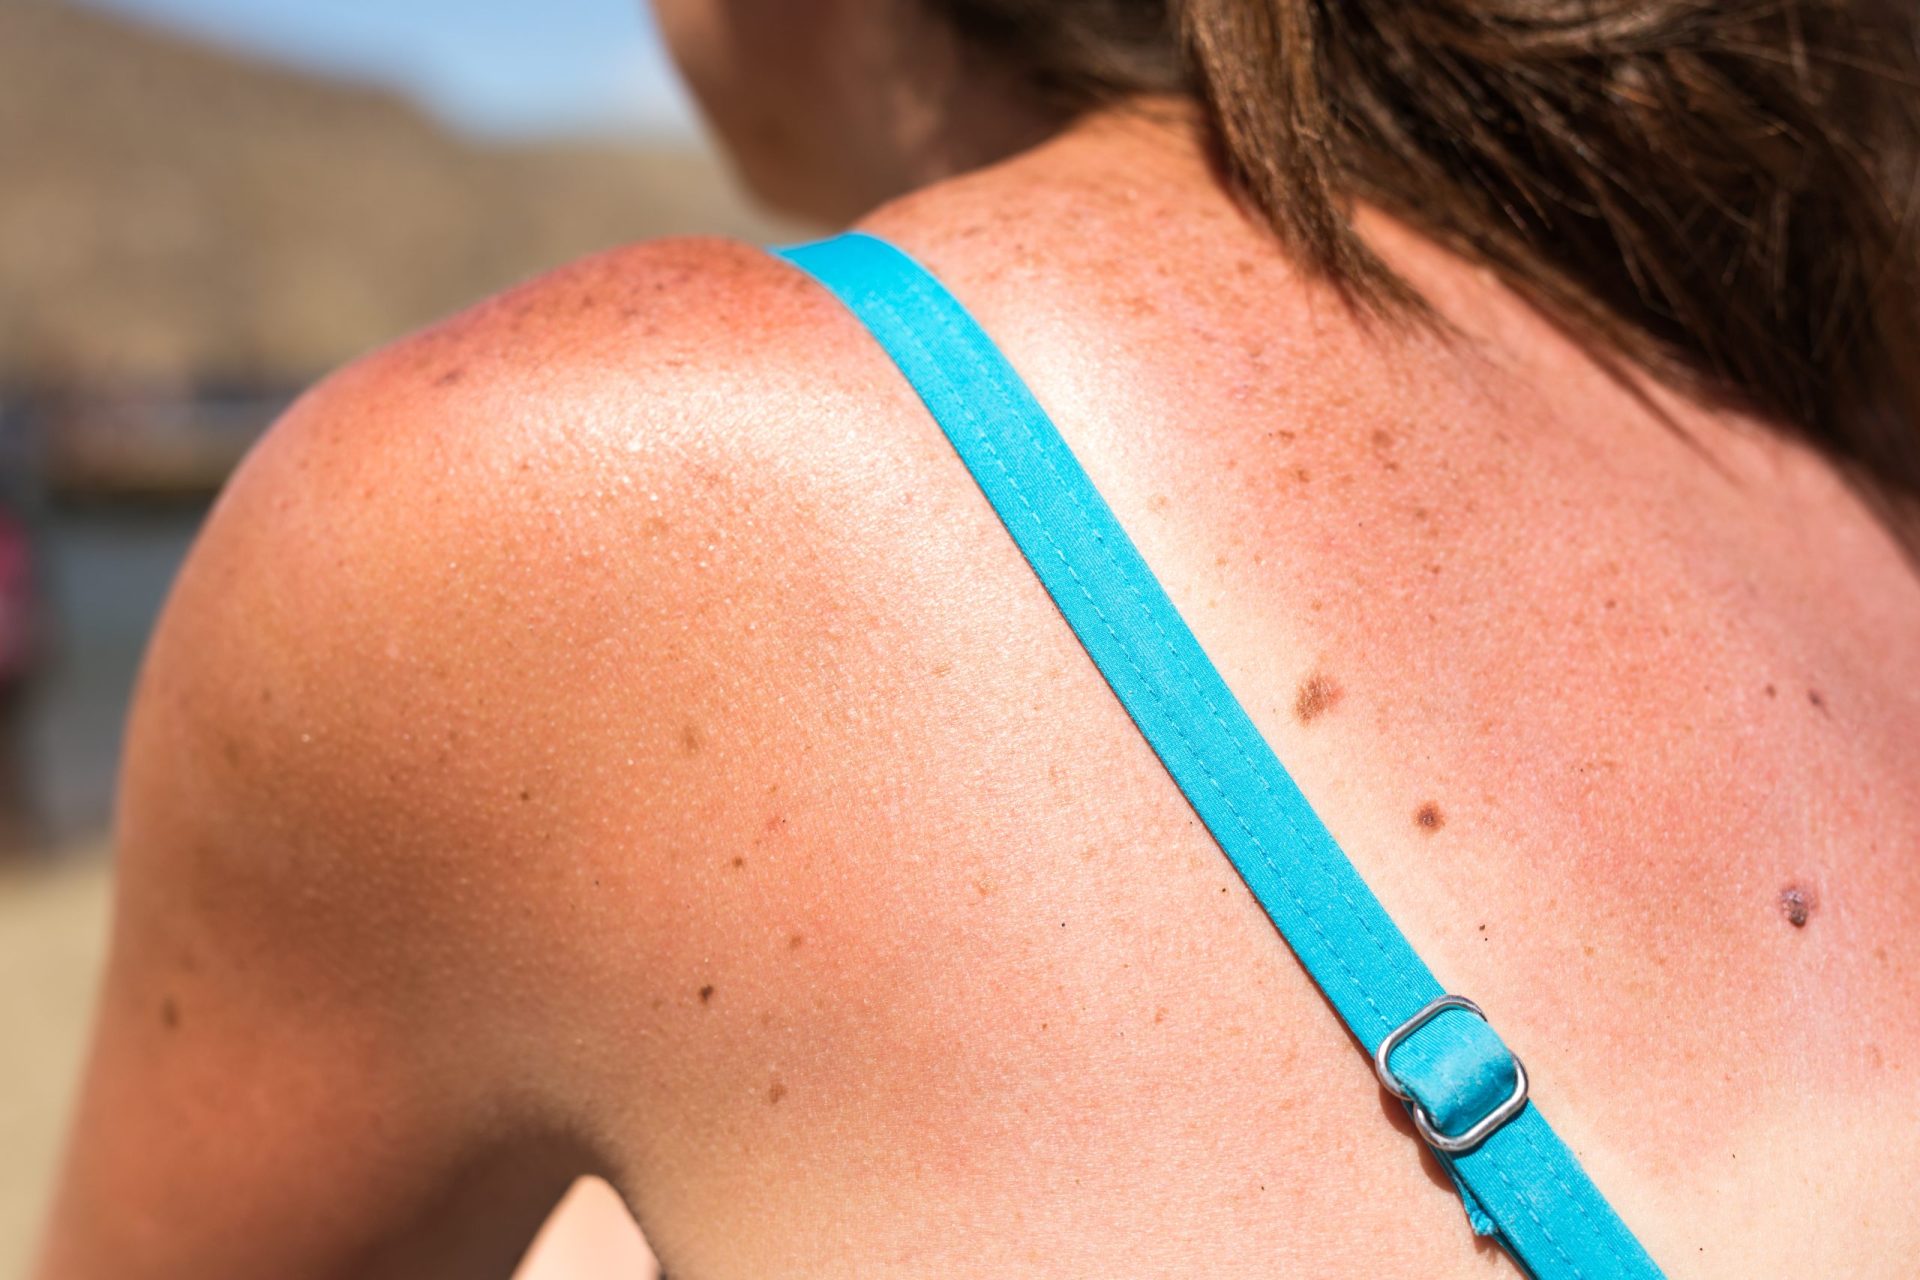 Sabe distinguir queimaduras de alergias ao sol?